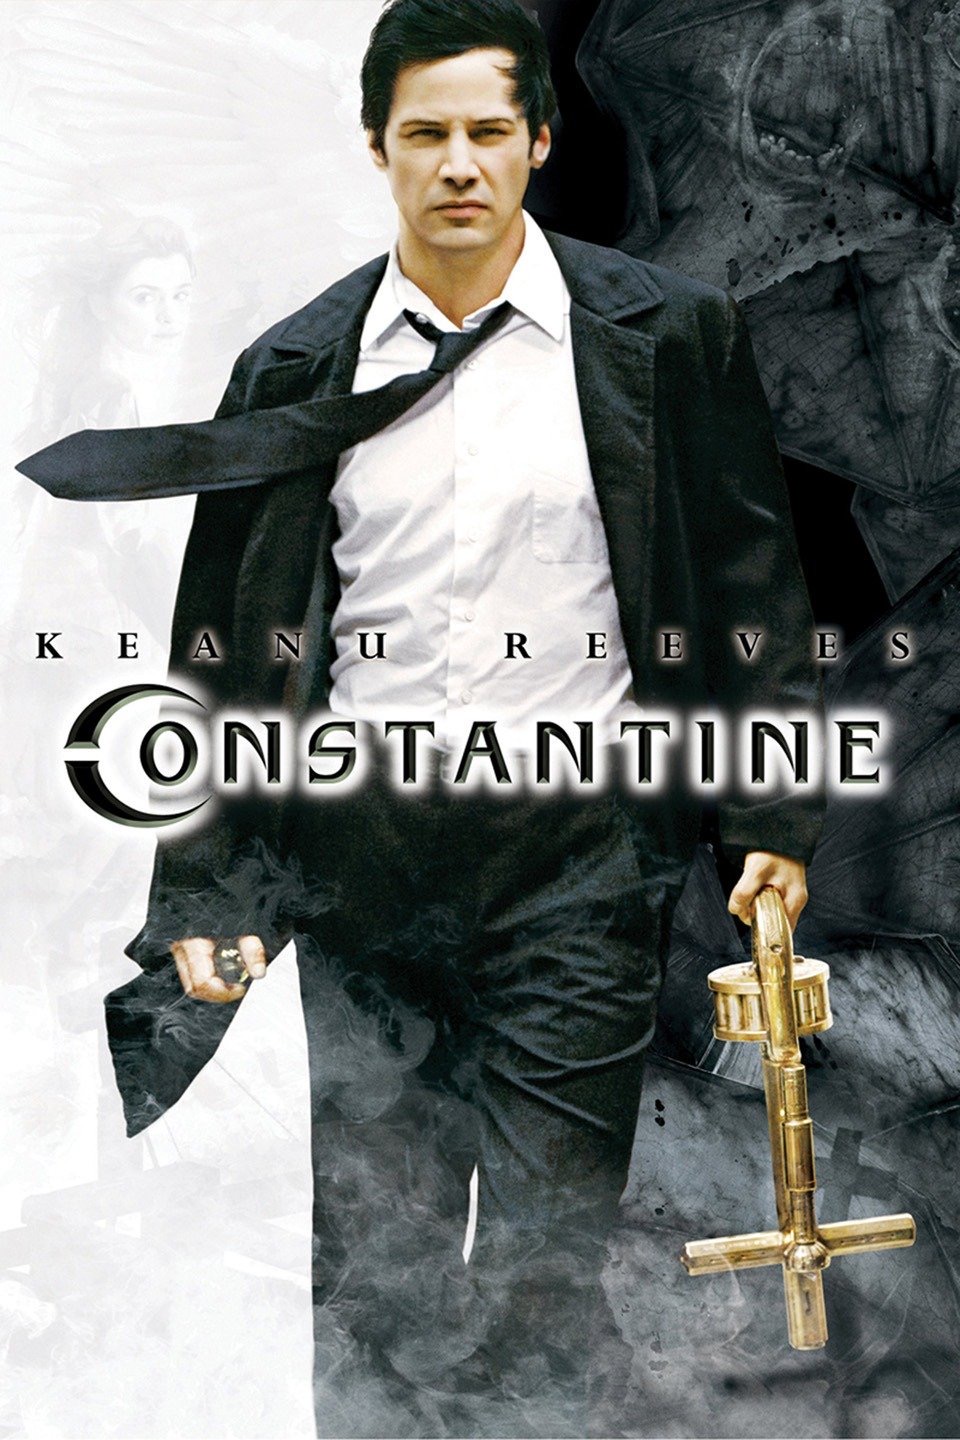 Keanu Reeves in Constantine